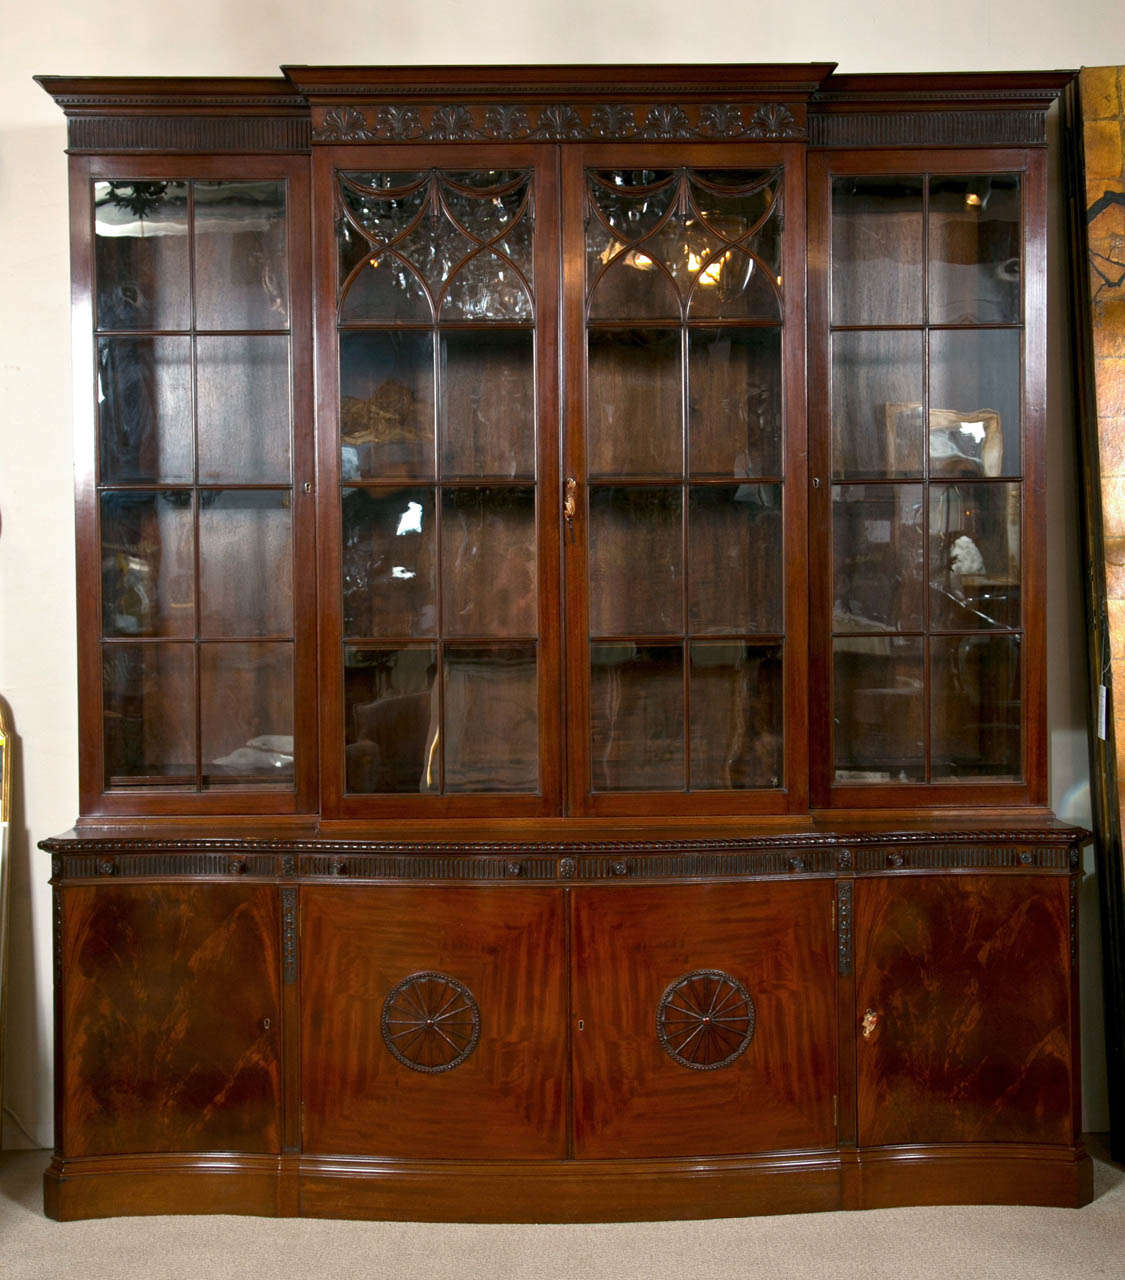 Ein sehr fein geschnitztes Mahagoni-Bücherregal mit auf Gehrung geschnittenen Türen und Sprossen auf einem niedrigen Sockel. Das Bücherregal verfügt über persönliche Leseschienen für vier Personen, hergestellt von Maple & Co, dem führenden